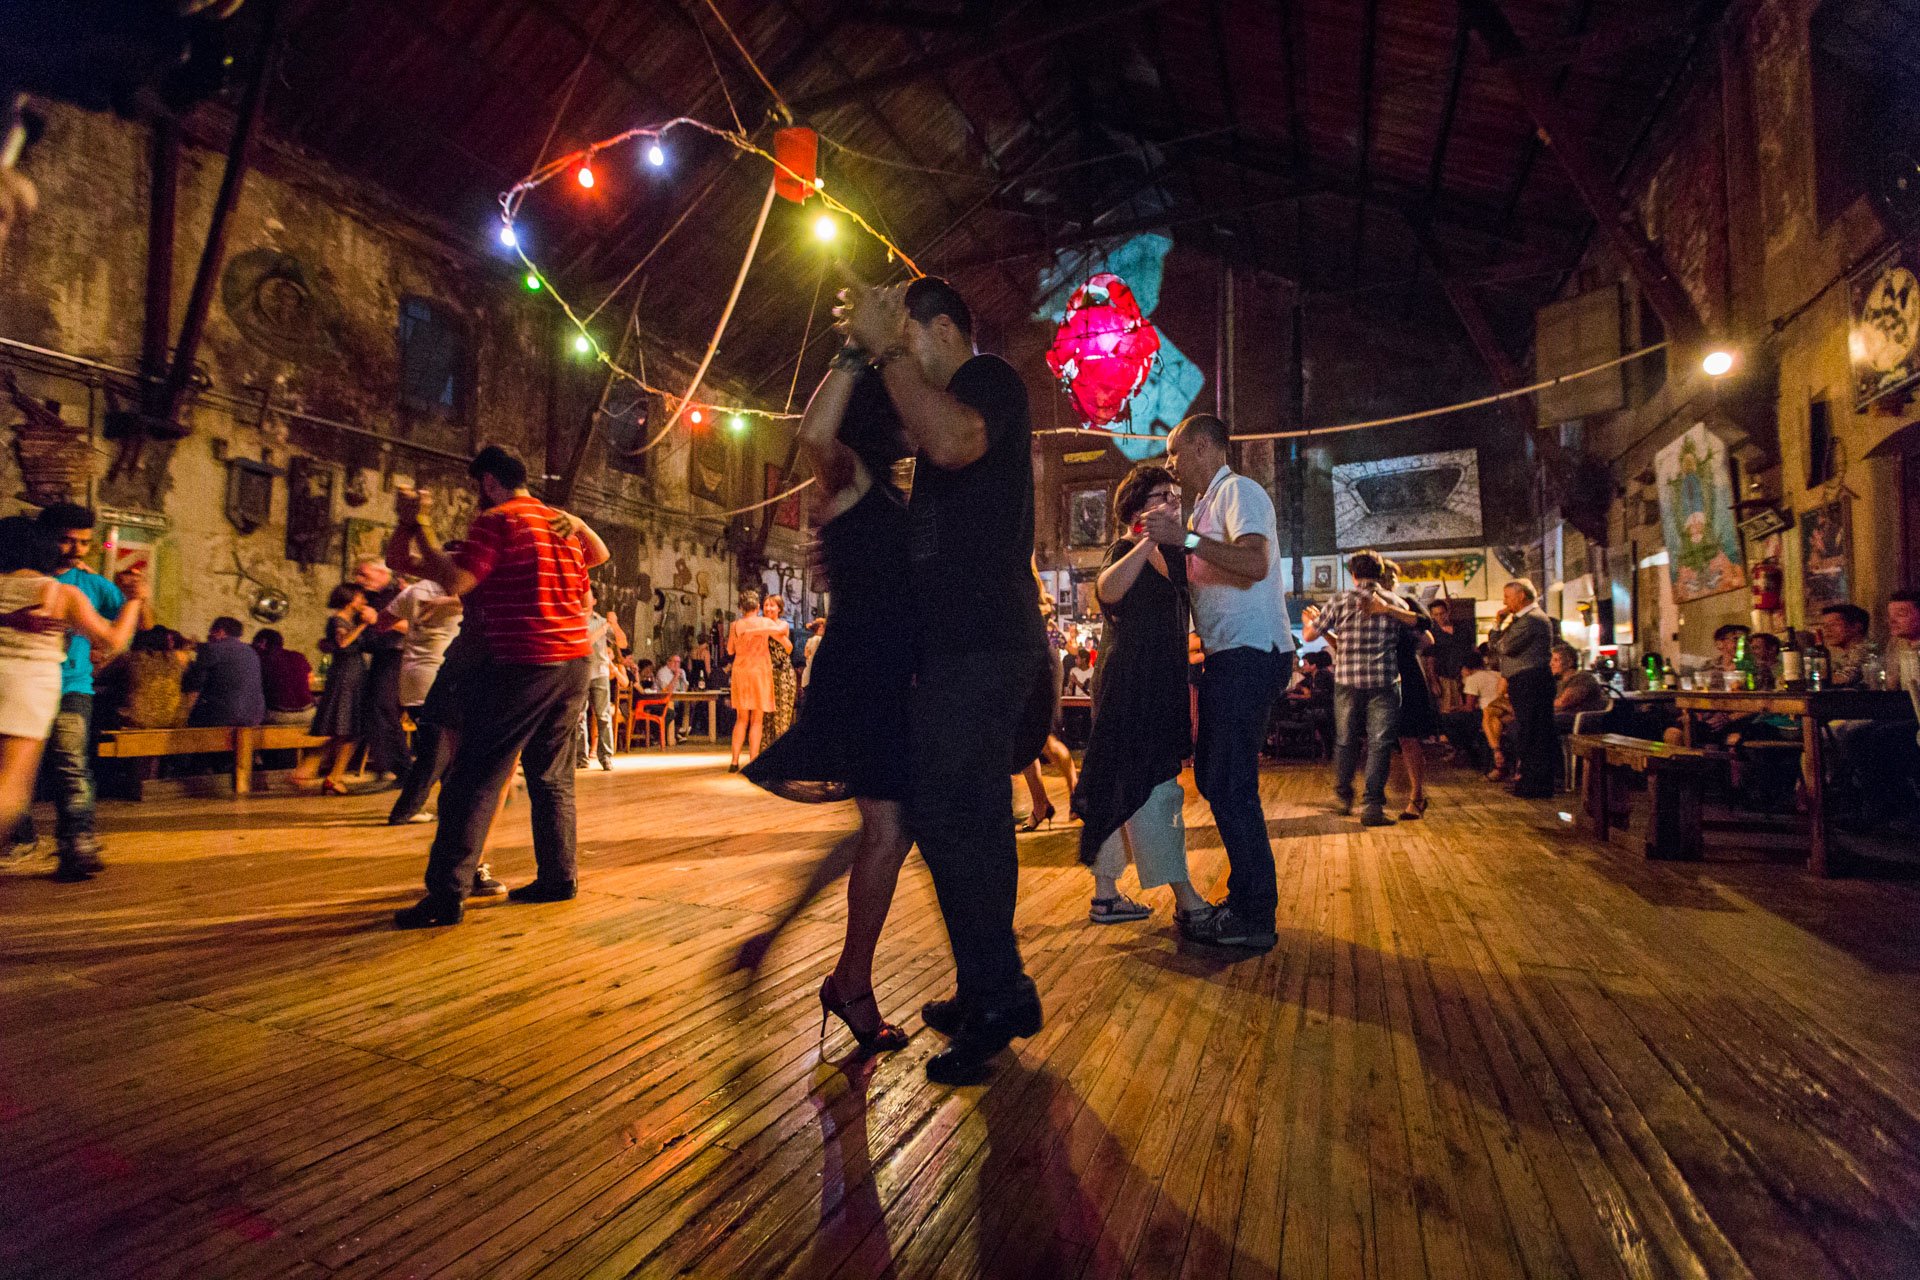 En août, le Festival mondial du tango a lieu dans la capitale argentine ! Source : Viventura